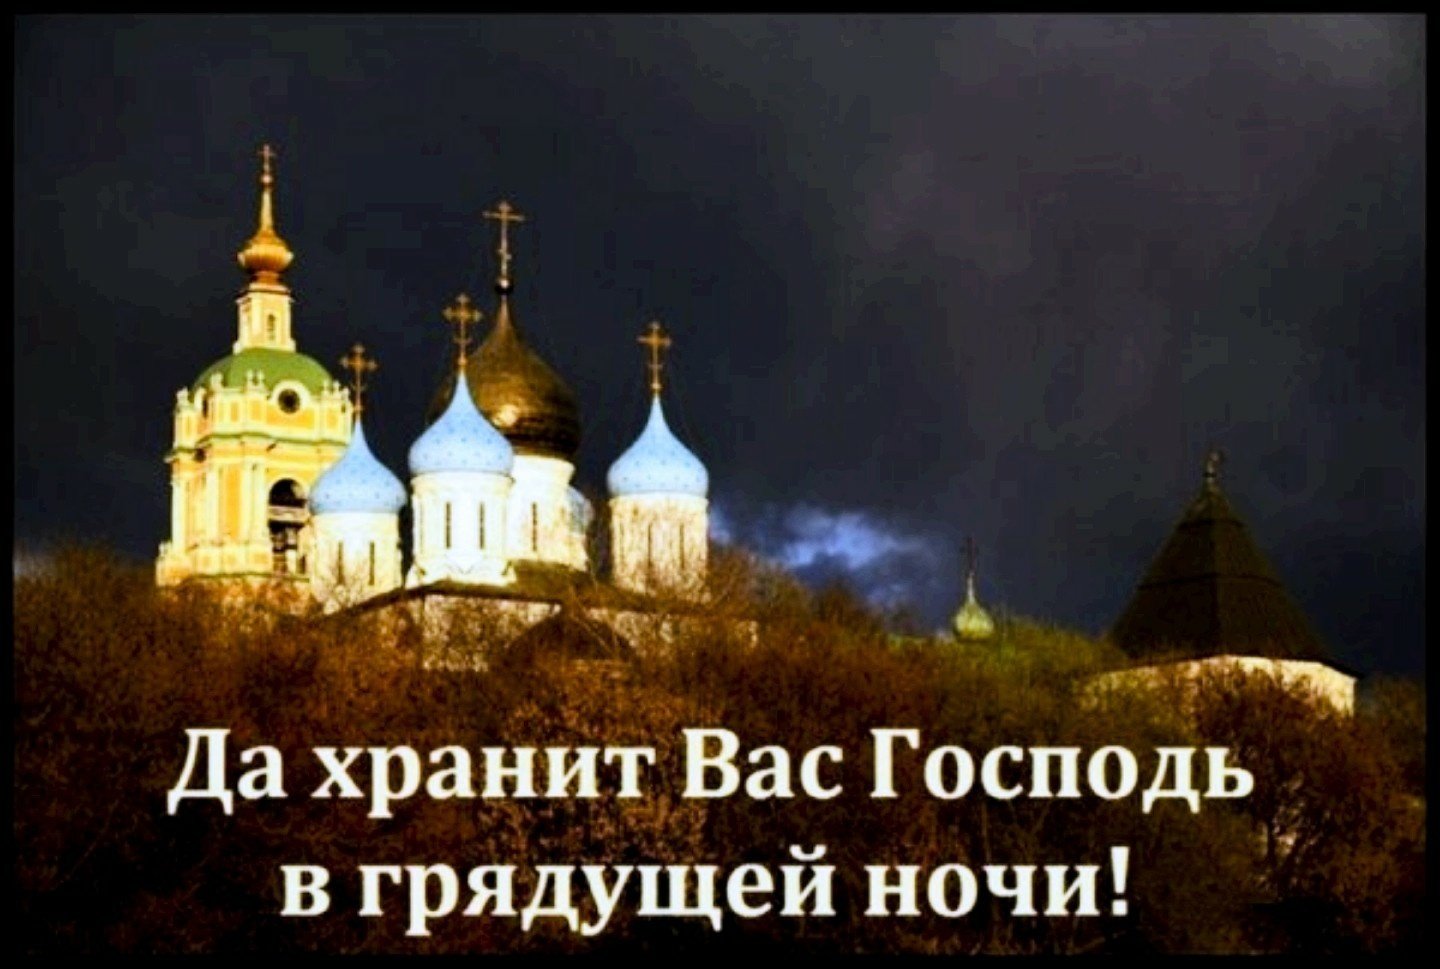 Благословляю этот вечер. Православные пожелания спокойной ночи. Доброй ночи православные. Доброй ночи храни вас Господь. Доброй ночи храни вас го.